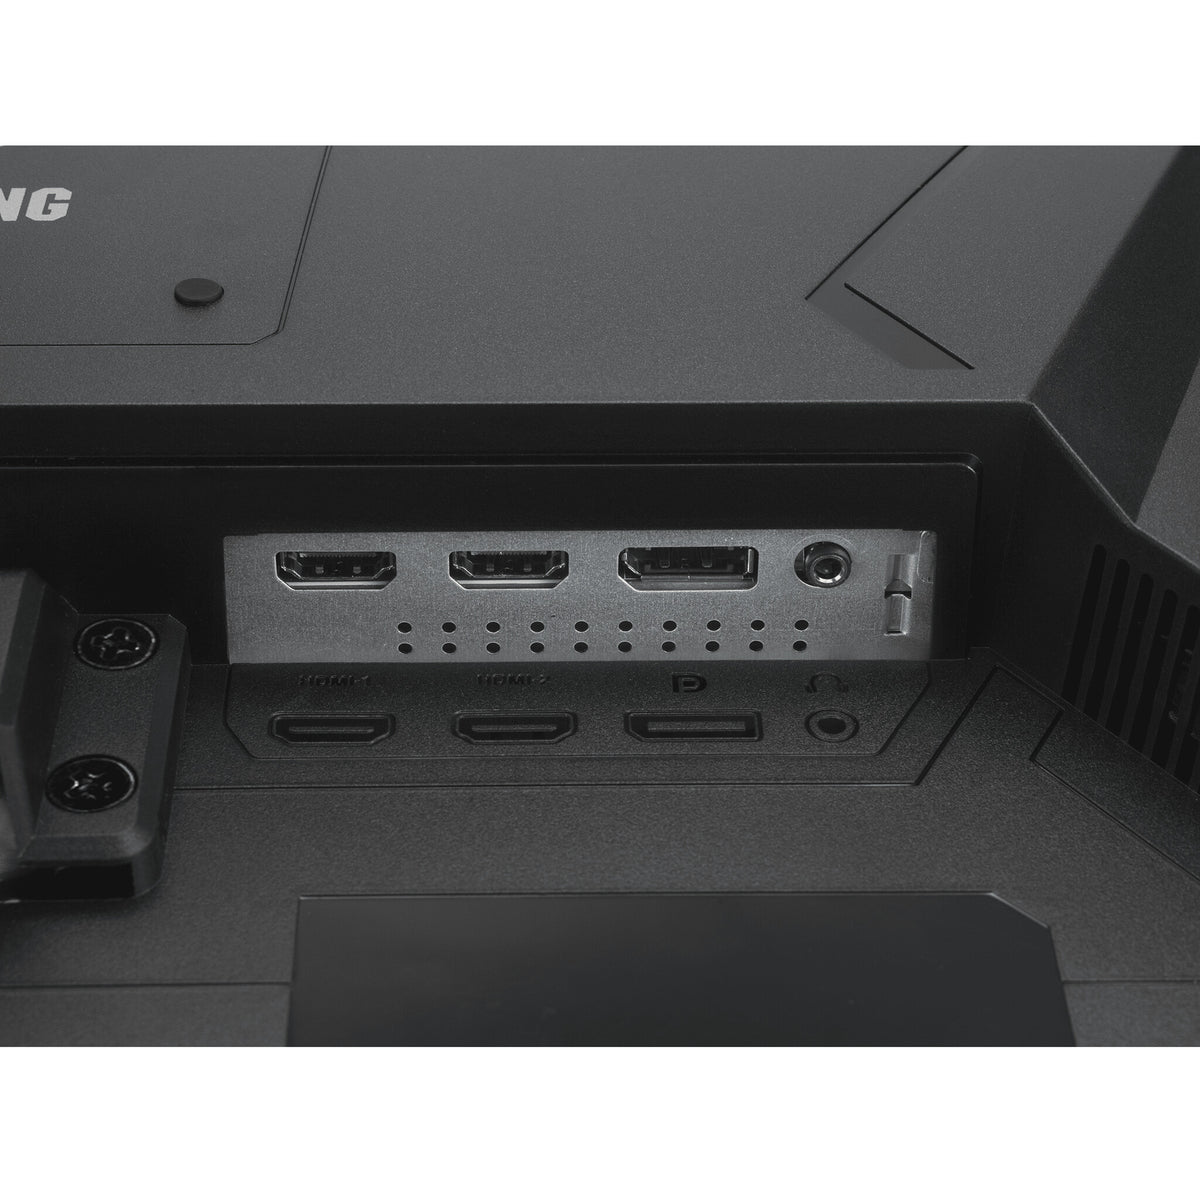 ASUS TUF Gaming VG249Q1A - 60.5 cm (23.8&quot;) - 1920 x 1080 pixels Full HD LED Monitor